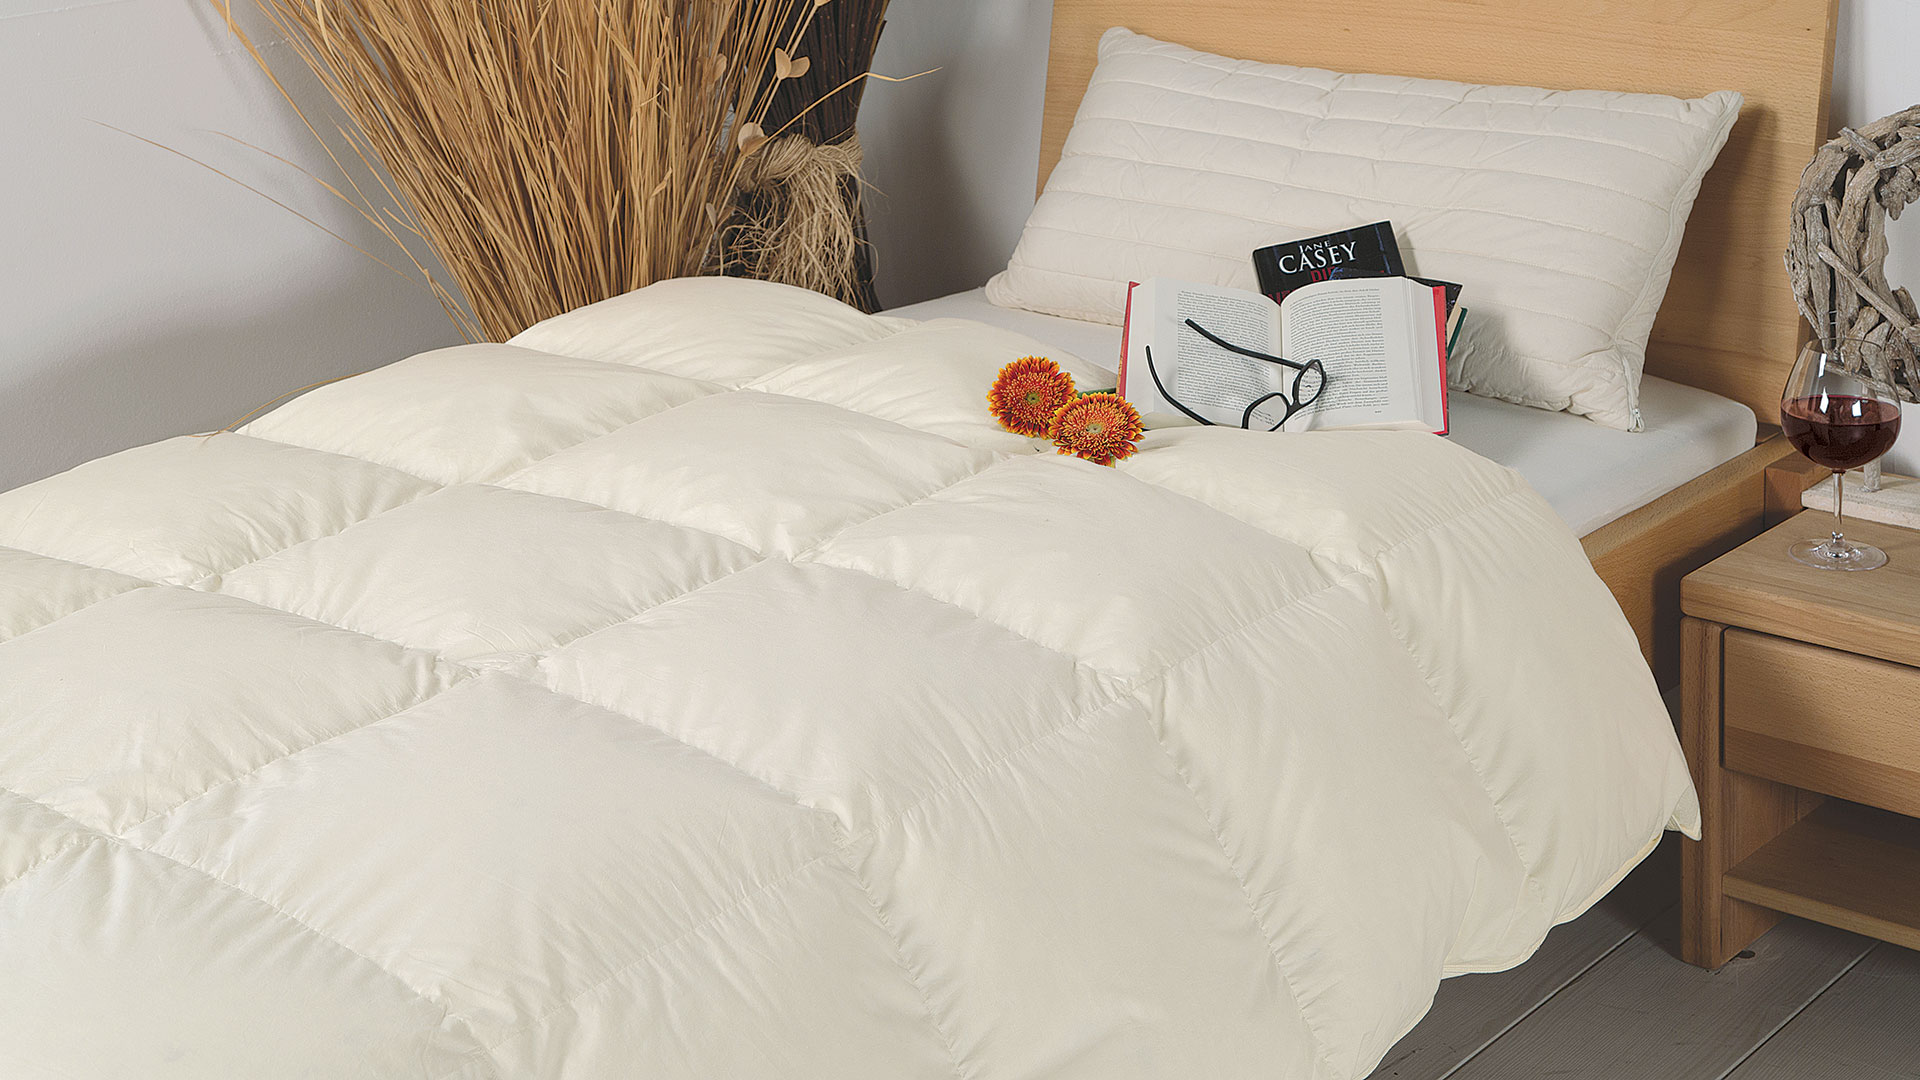 Erwachsene Wolle Decke Bett Nadel Daunen decke einfarbige Decke